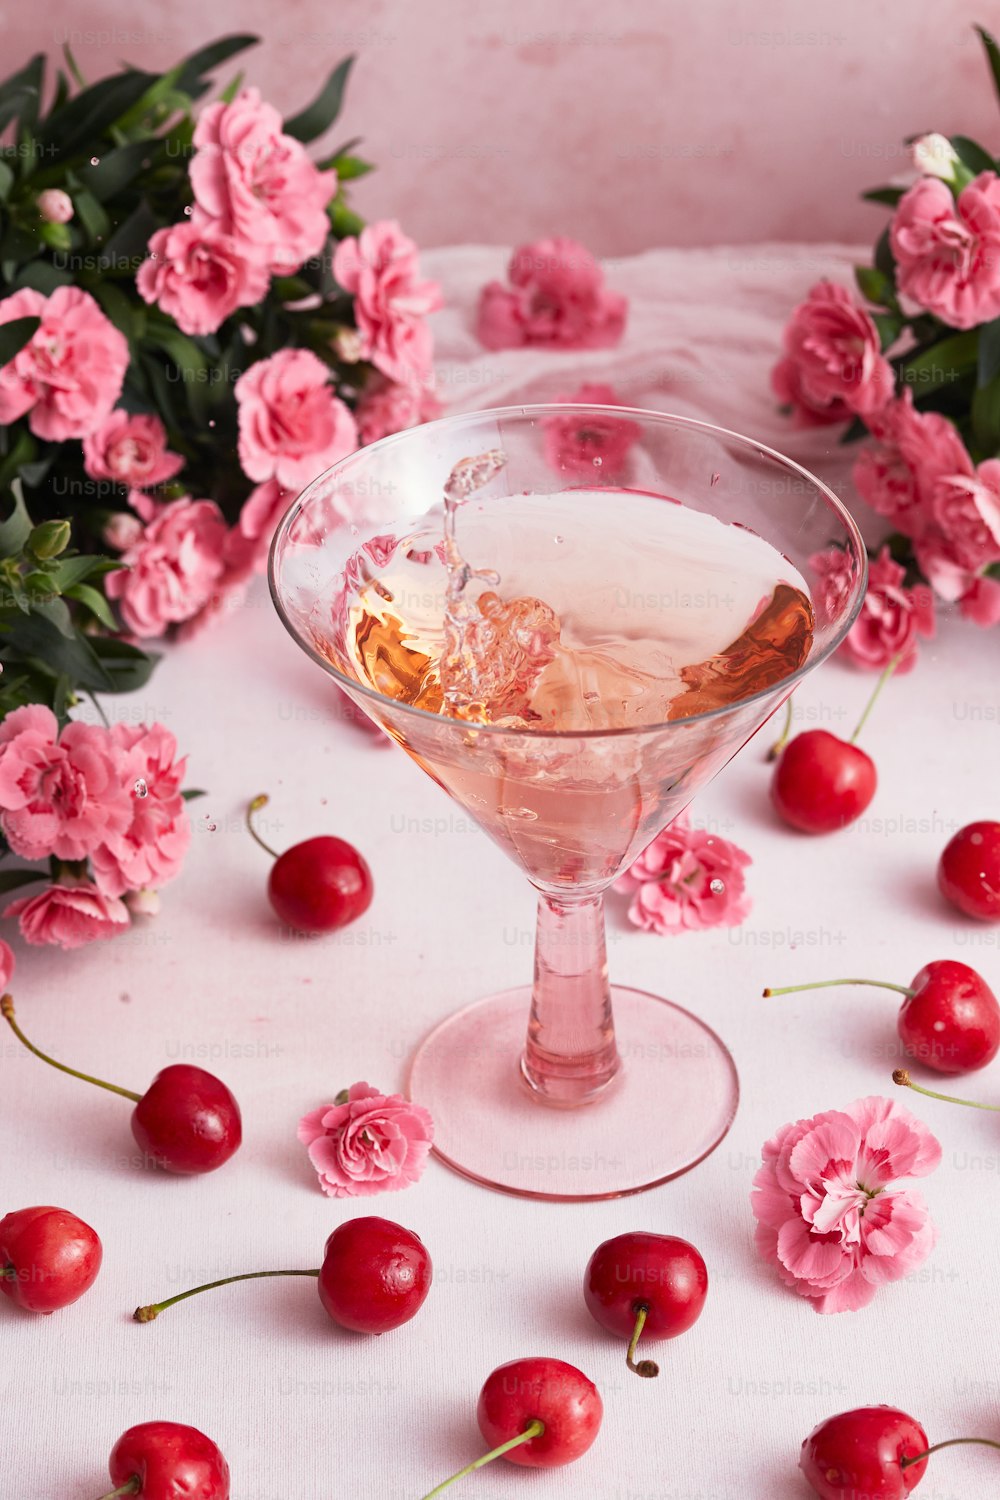 ein Glas, das mit einer Flüssigkeit gefüllt ist, umgeben von Blumen und Kirschen